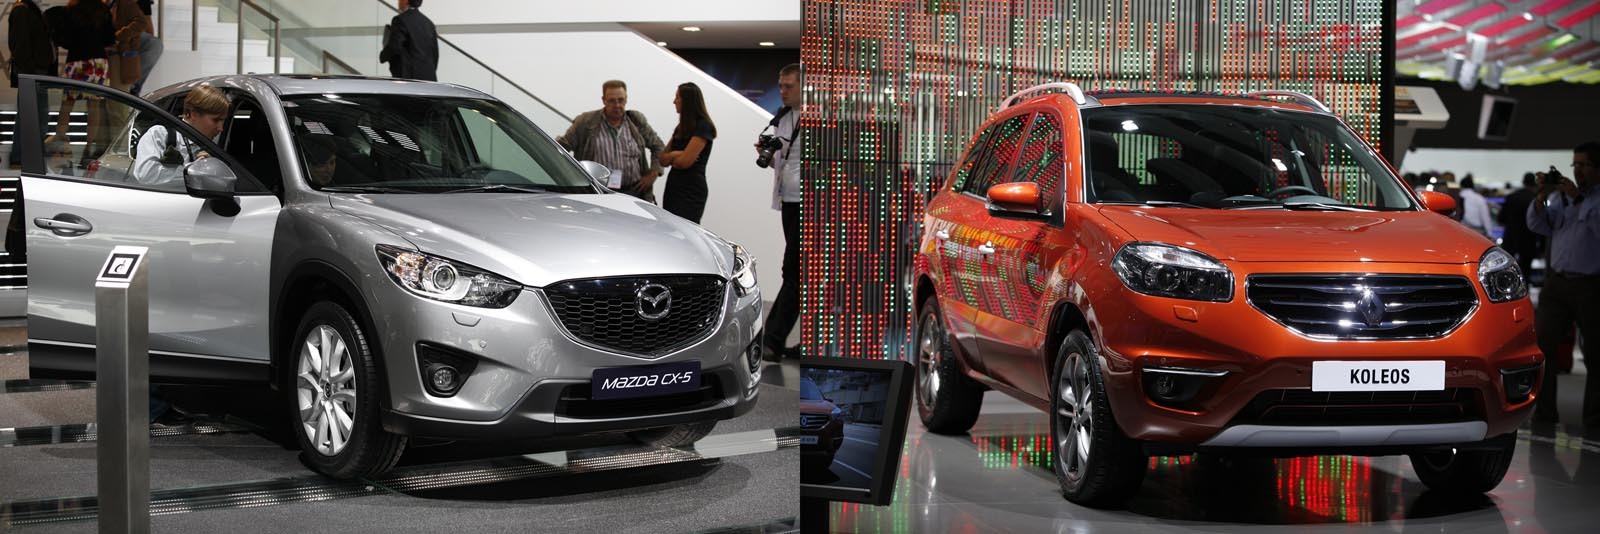 Mazda CX-5 vs. Renault Koleos facelift